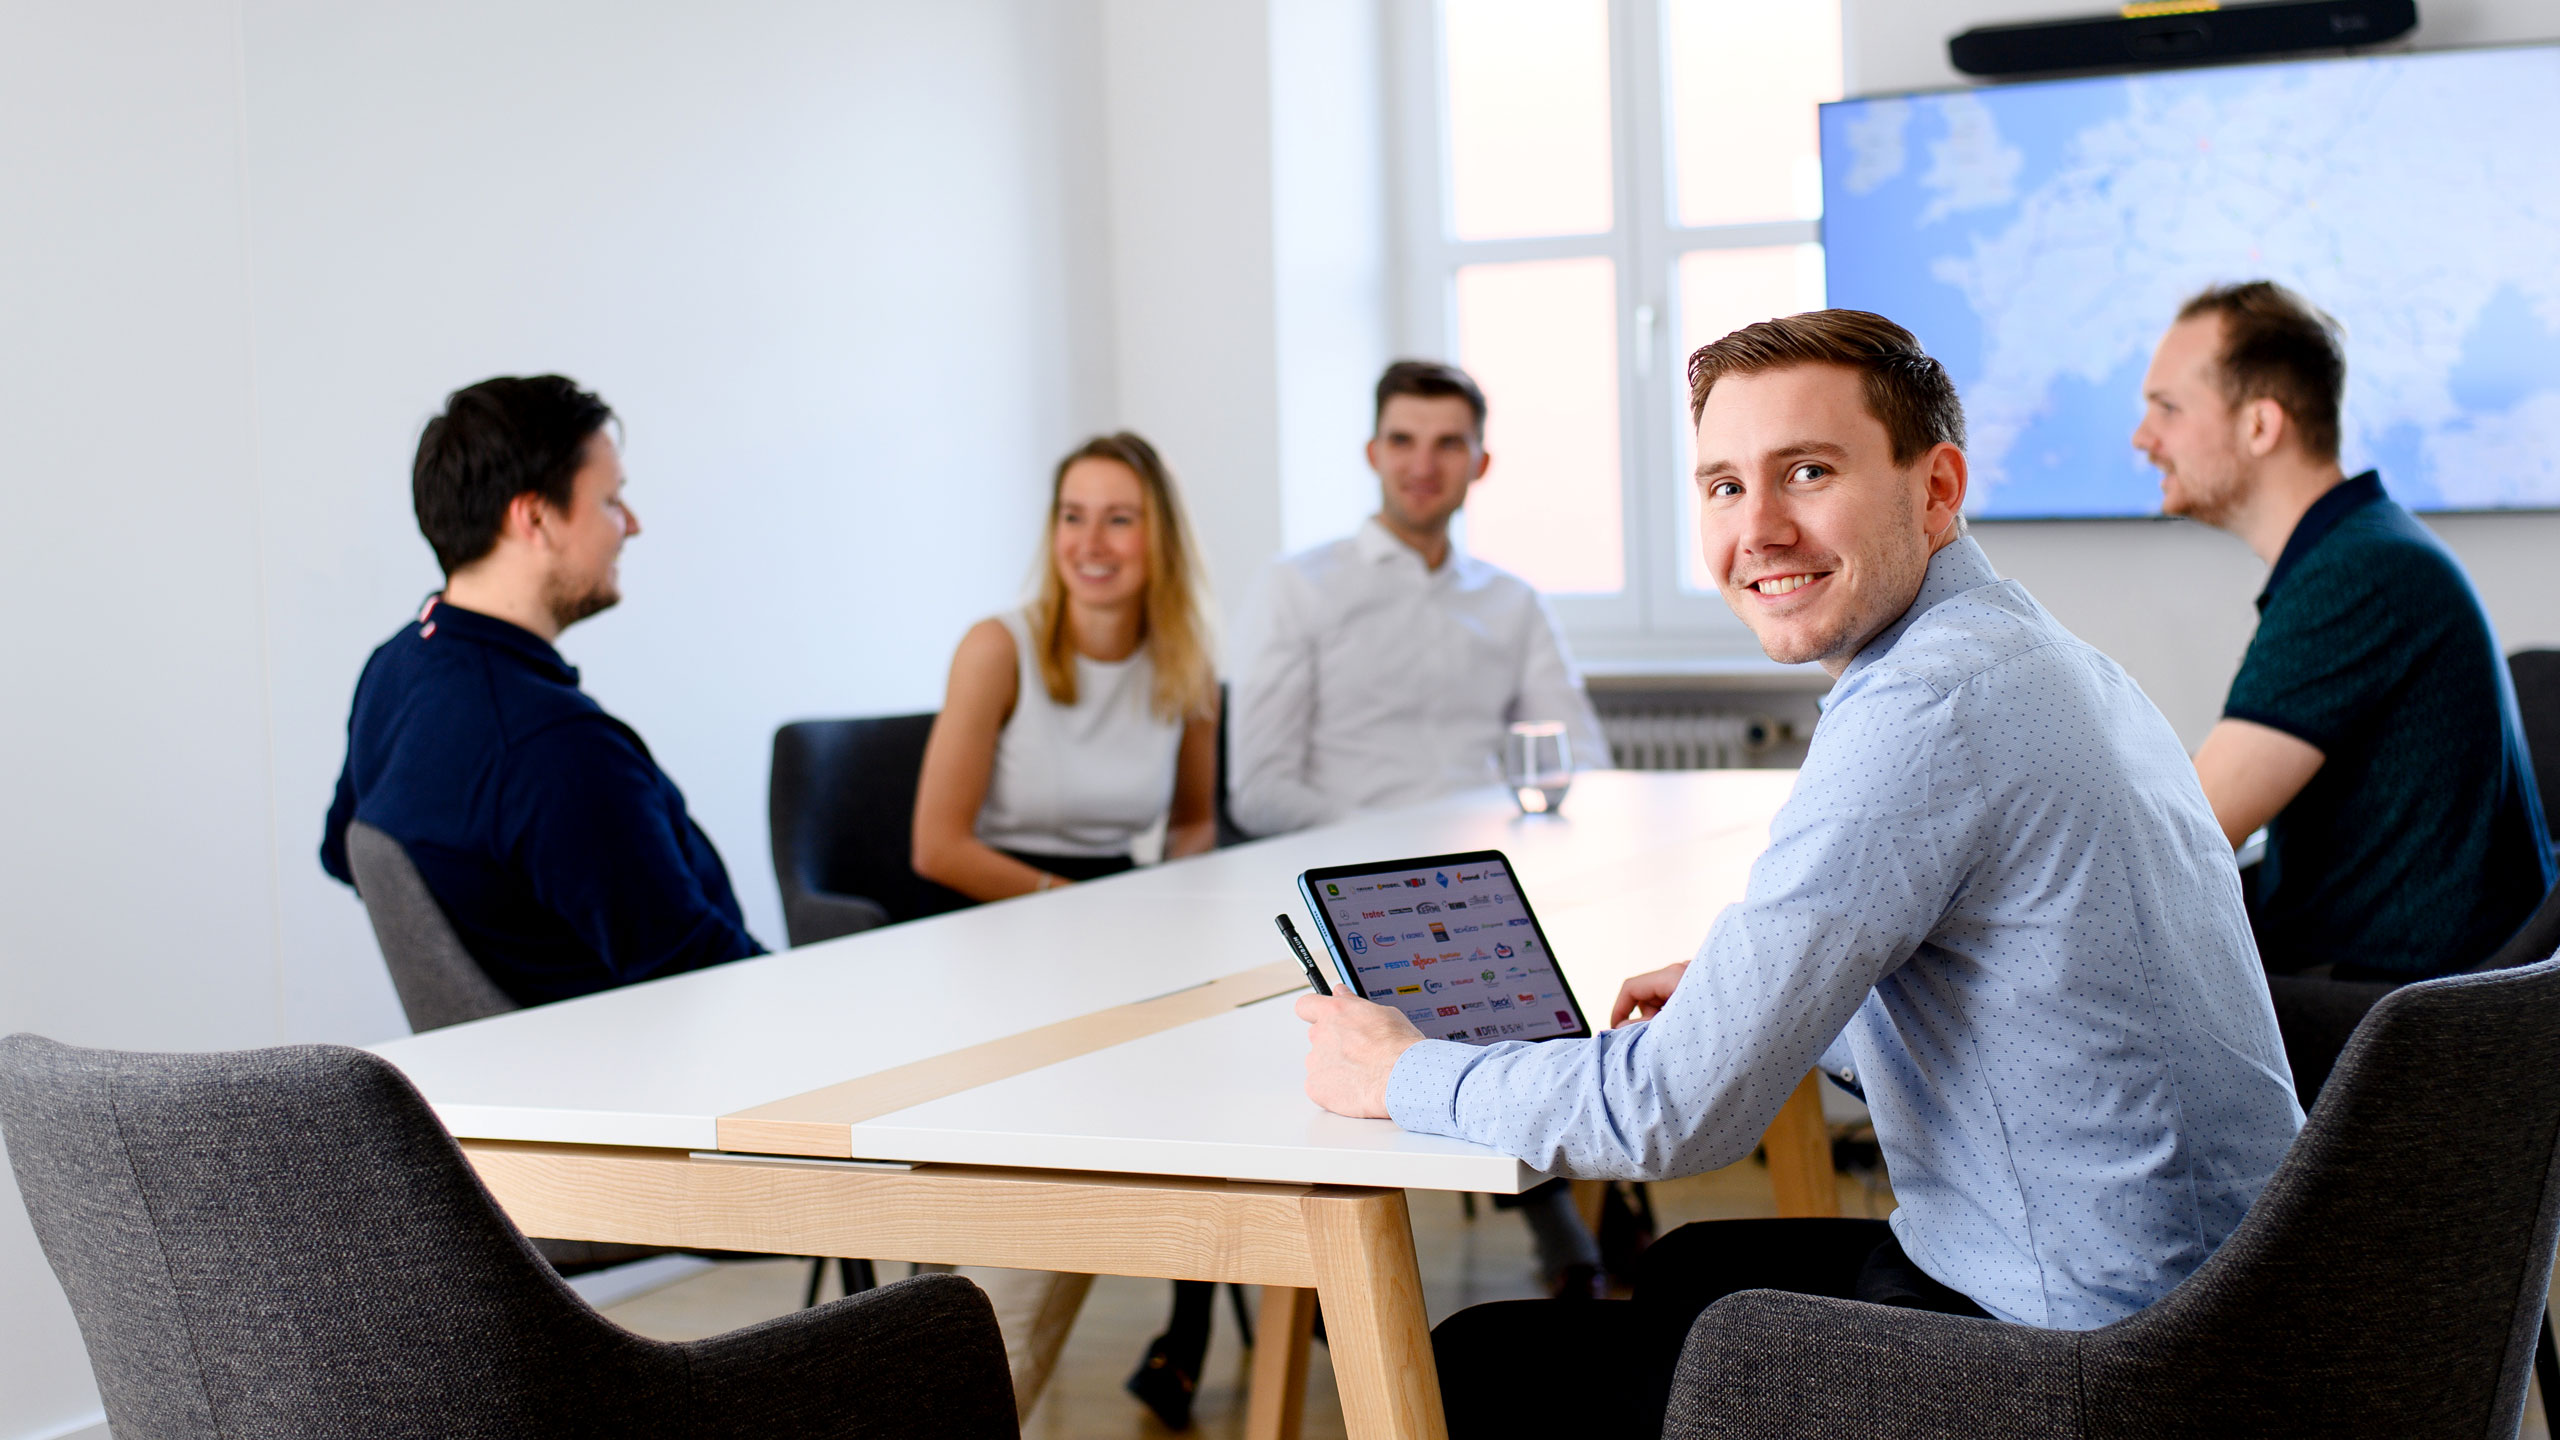 Headerbild zur Karriere-Seite für Berufseinsteigende: Gruppe aus fünf Personen aus dem Rothbaum-Team arbeitet bei guter Stimmung im Besprechungsraum im Office.